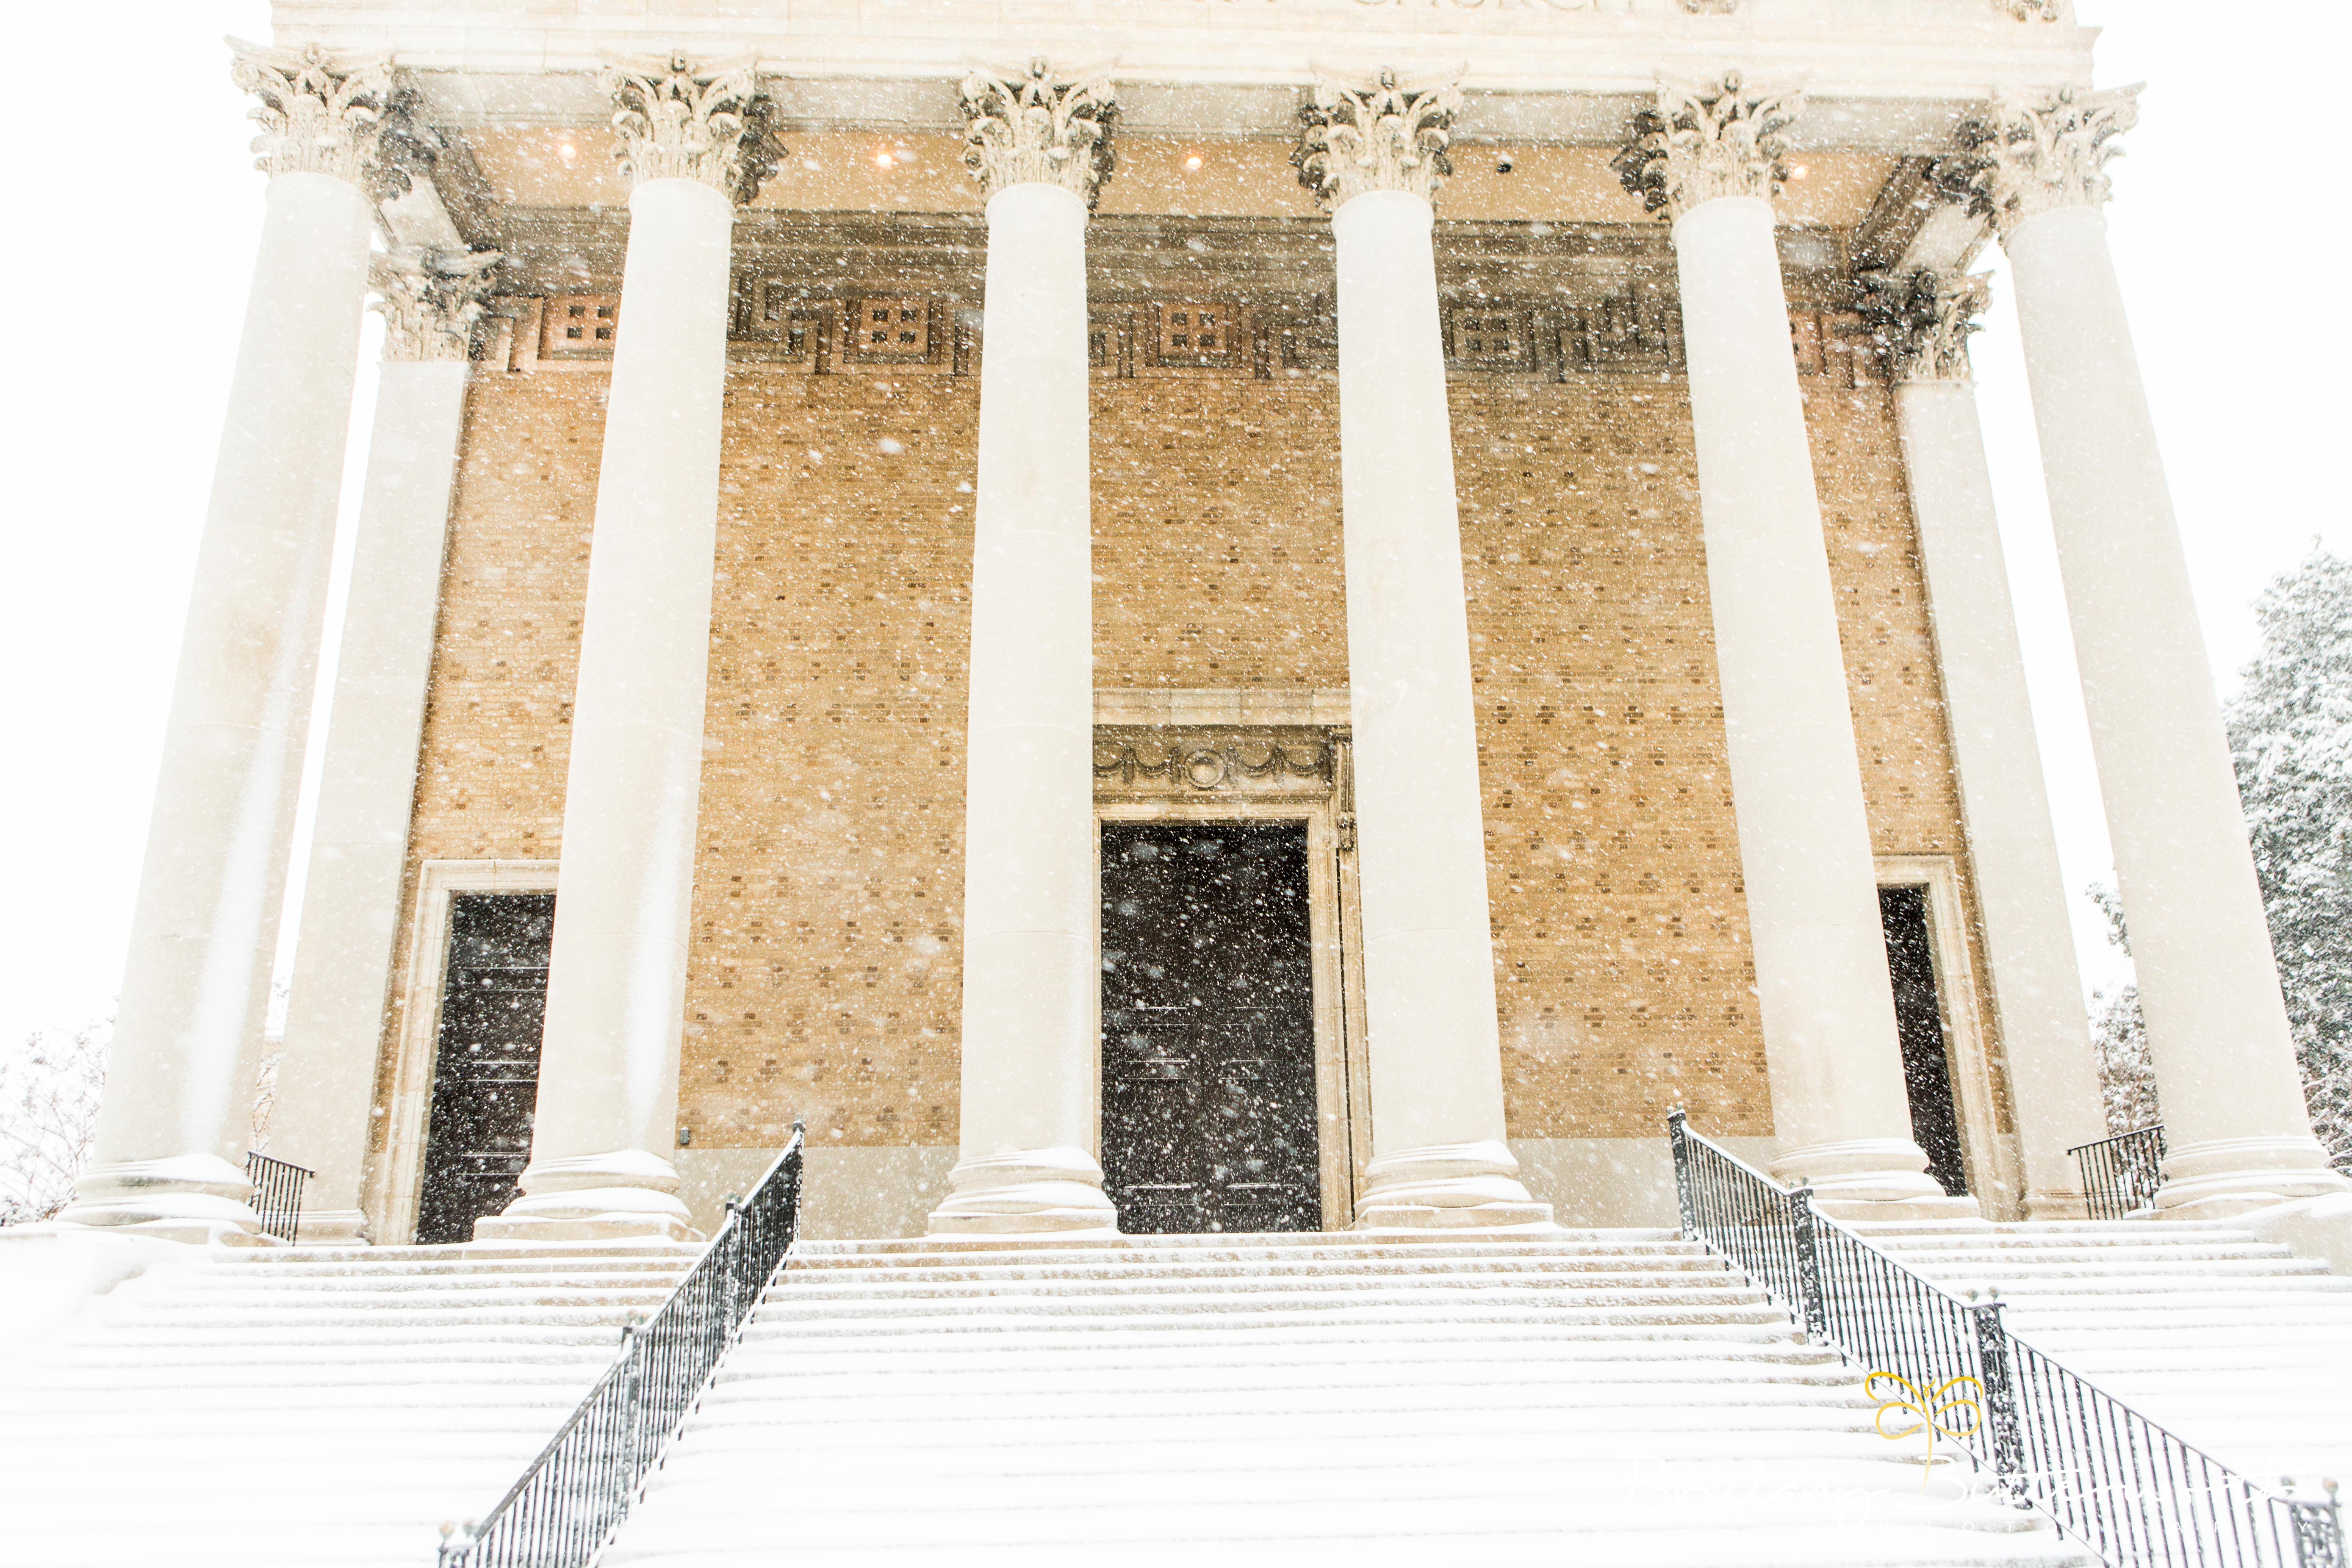 Snow on church steps